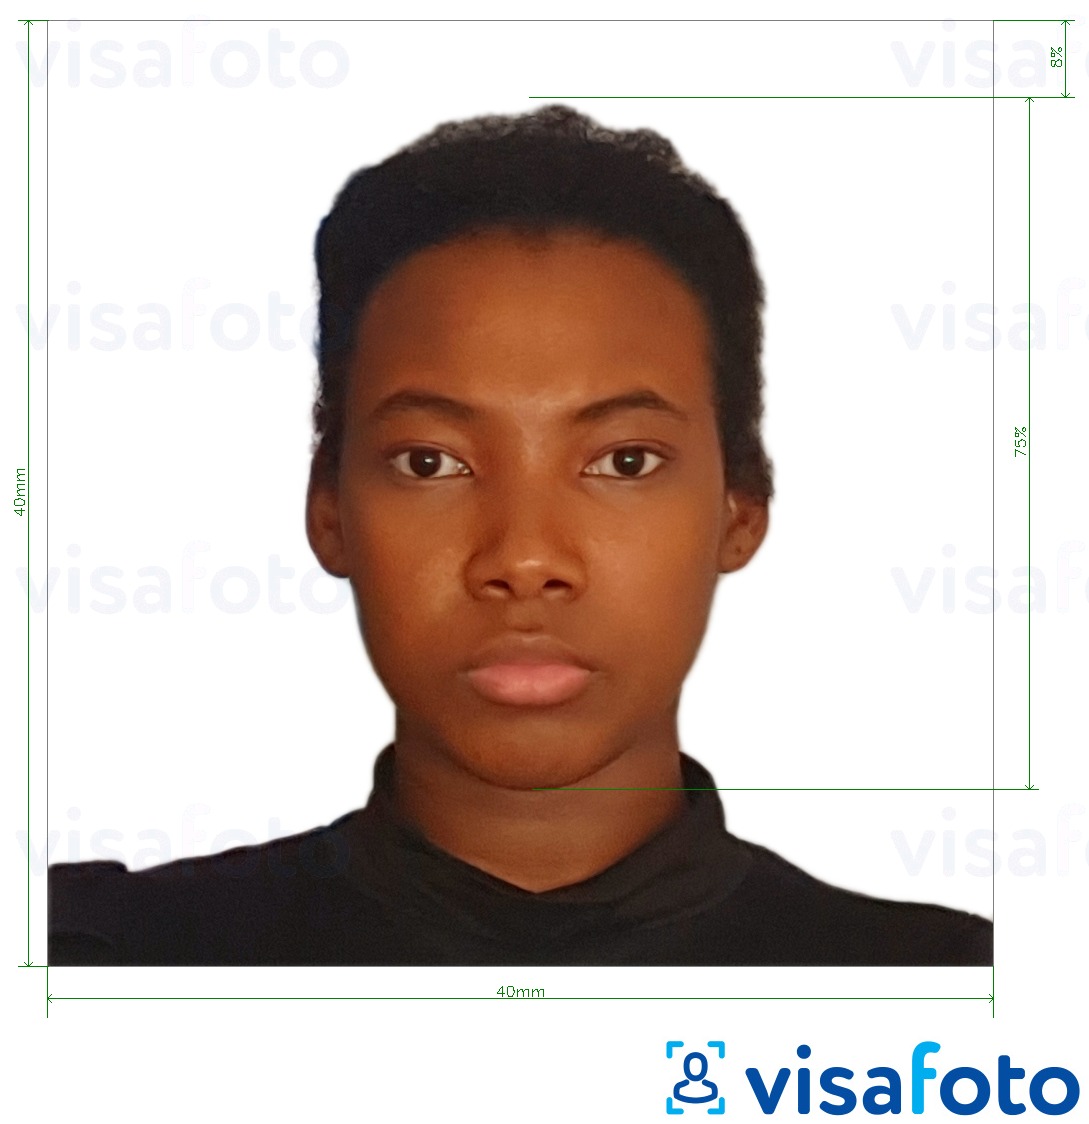 Eksempel på billede for Kamerun visum 4x4 cm (40x40 mm) med præcis størrelsesspecifikation.